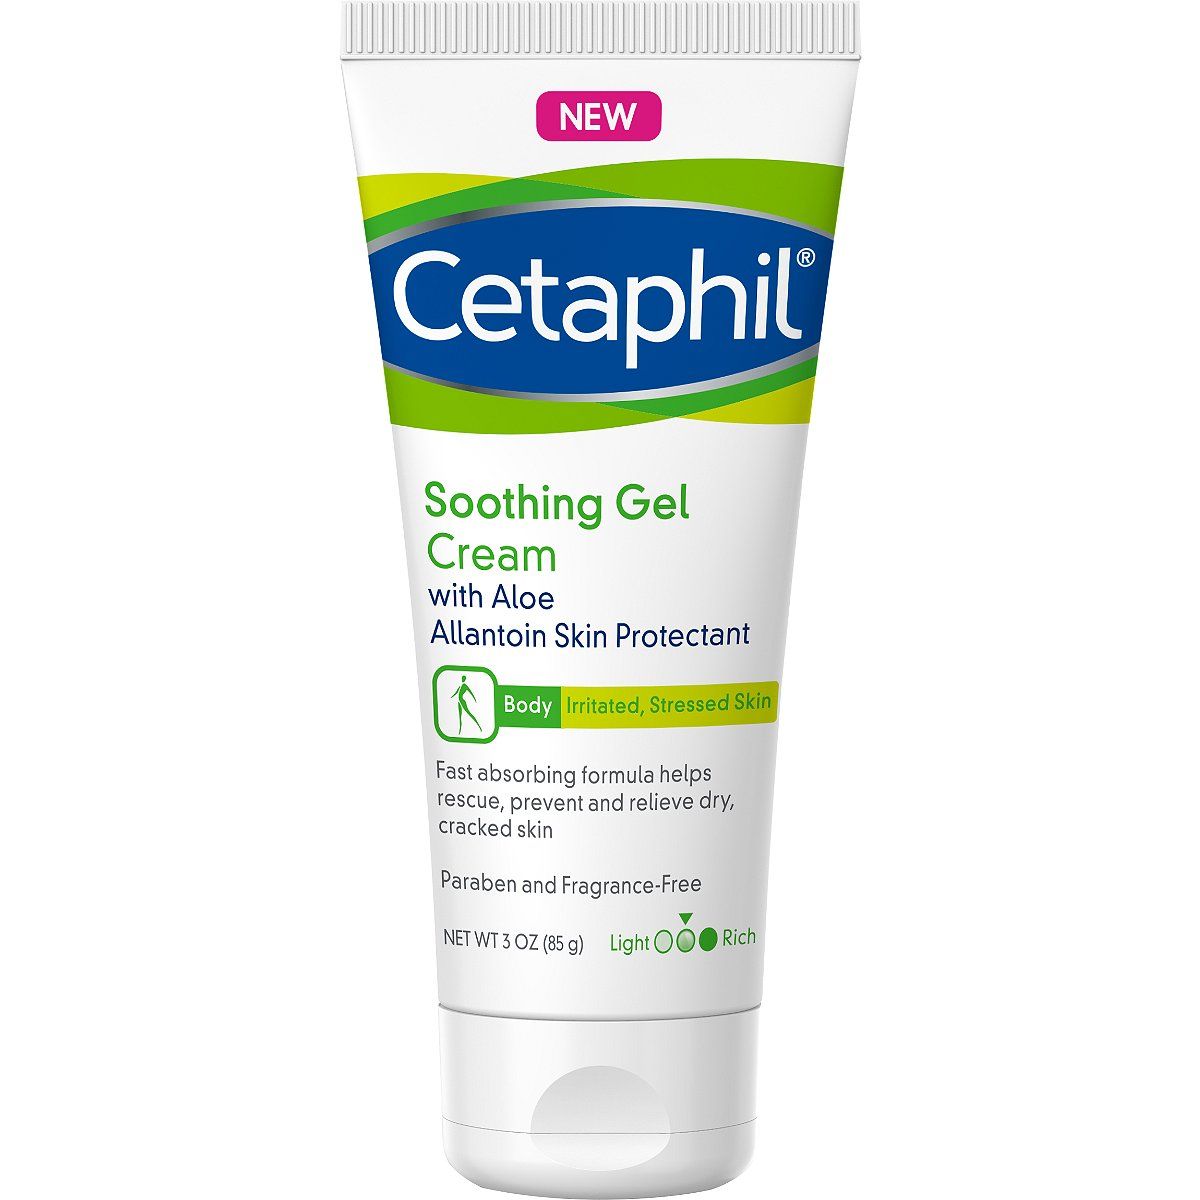 is cetaphil cream good for tattoos